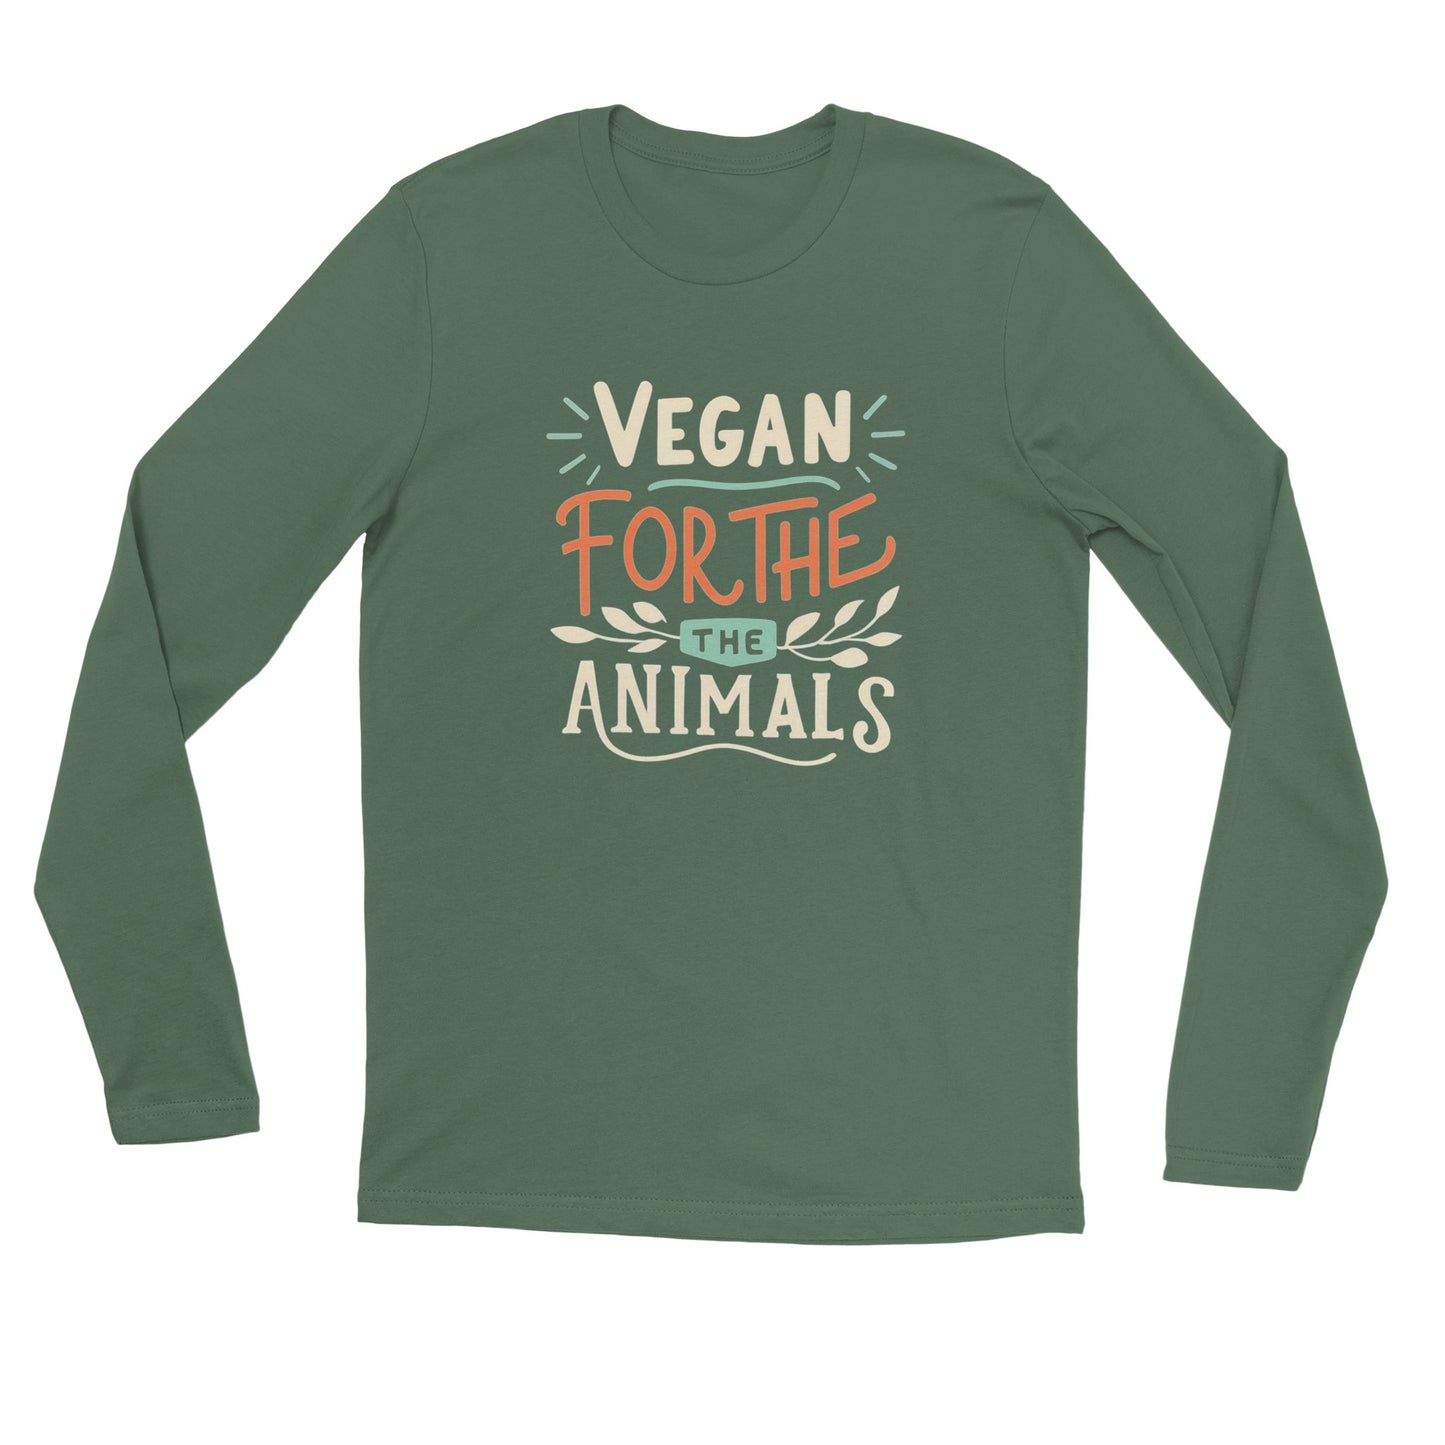 Vegan for the Animals - Unisex Longsleeve T-shirt